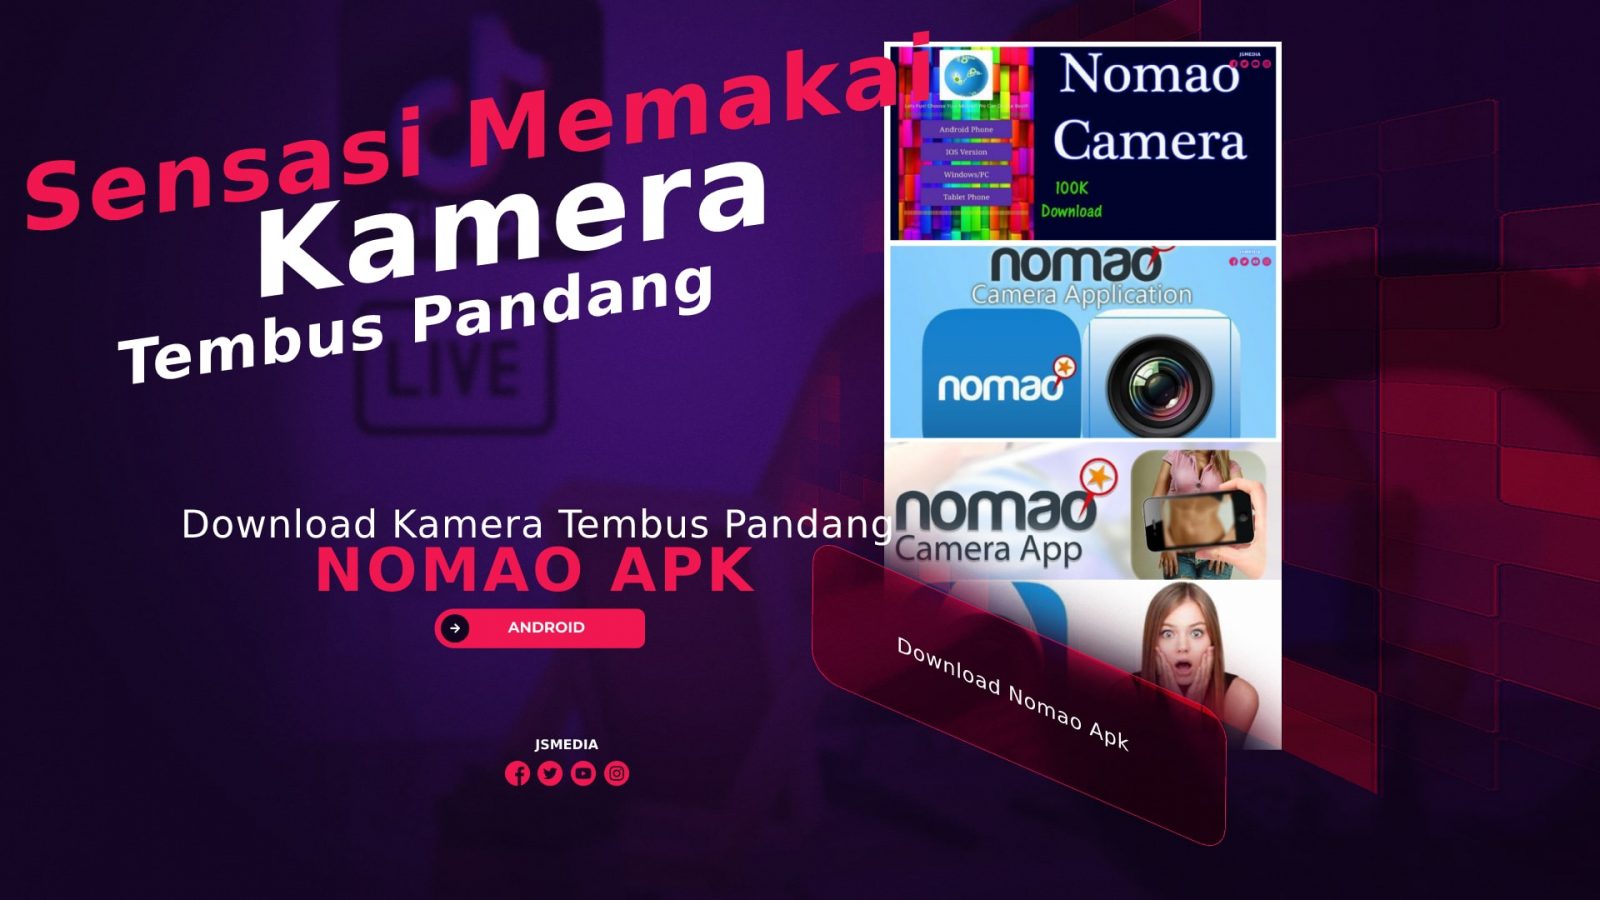 Download Nomao Apk, Sensasi Memakai Kamera Tembus Pandang